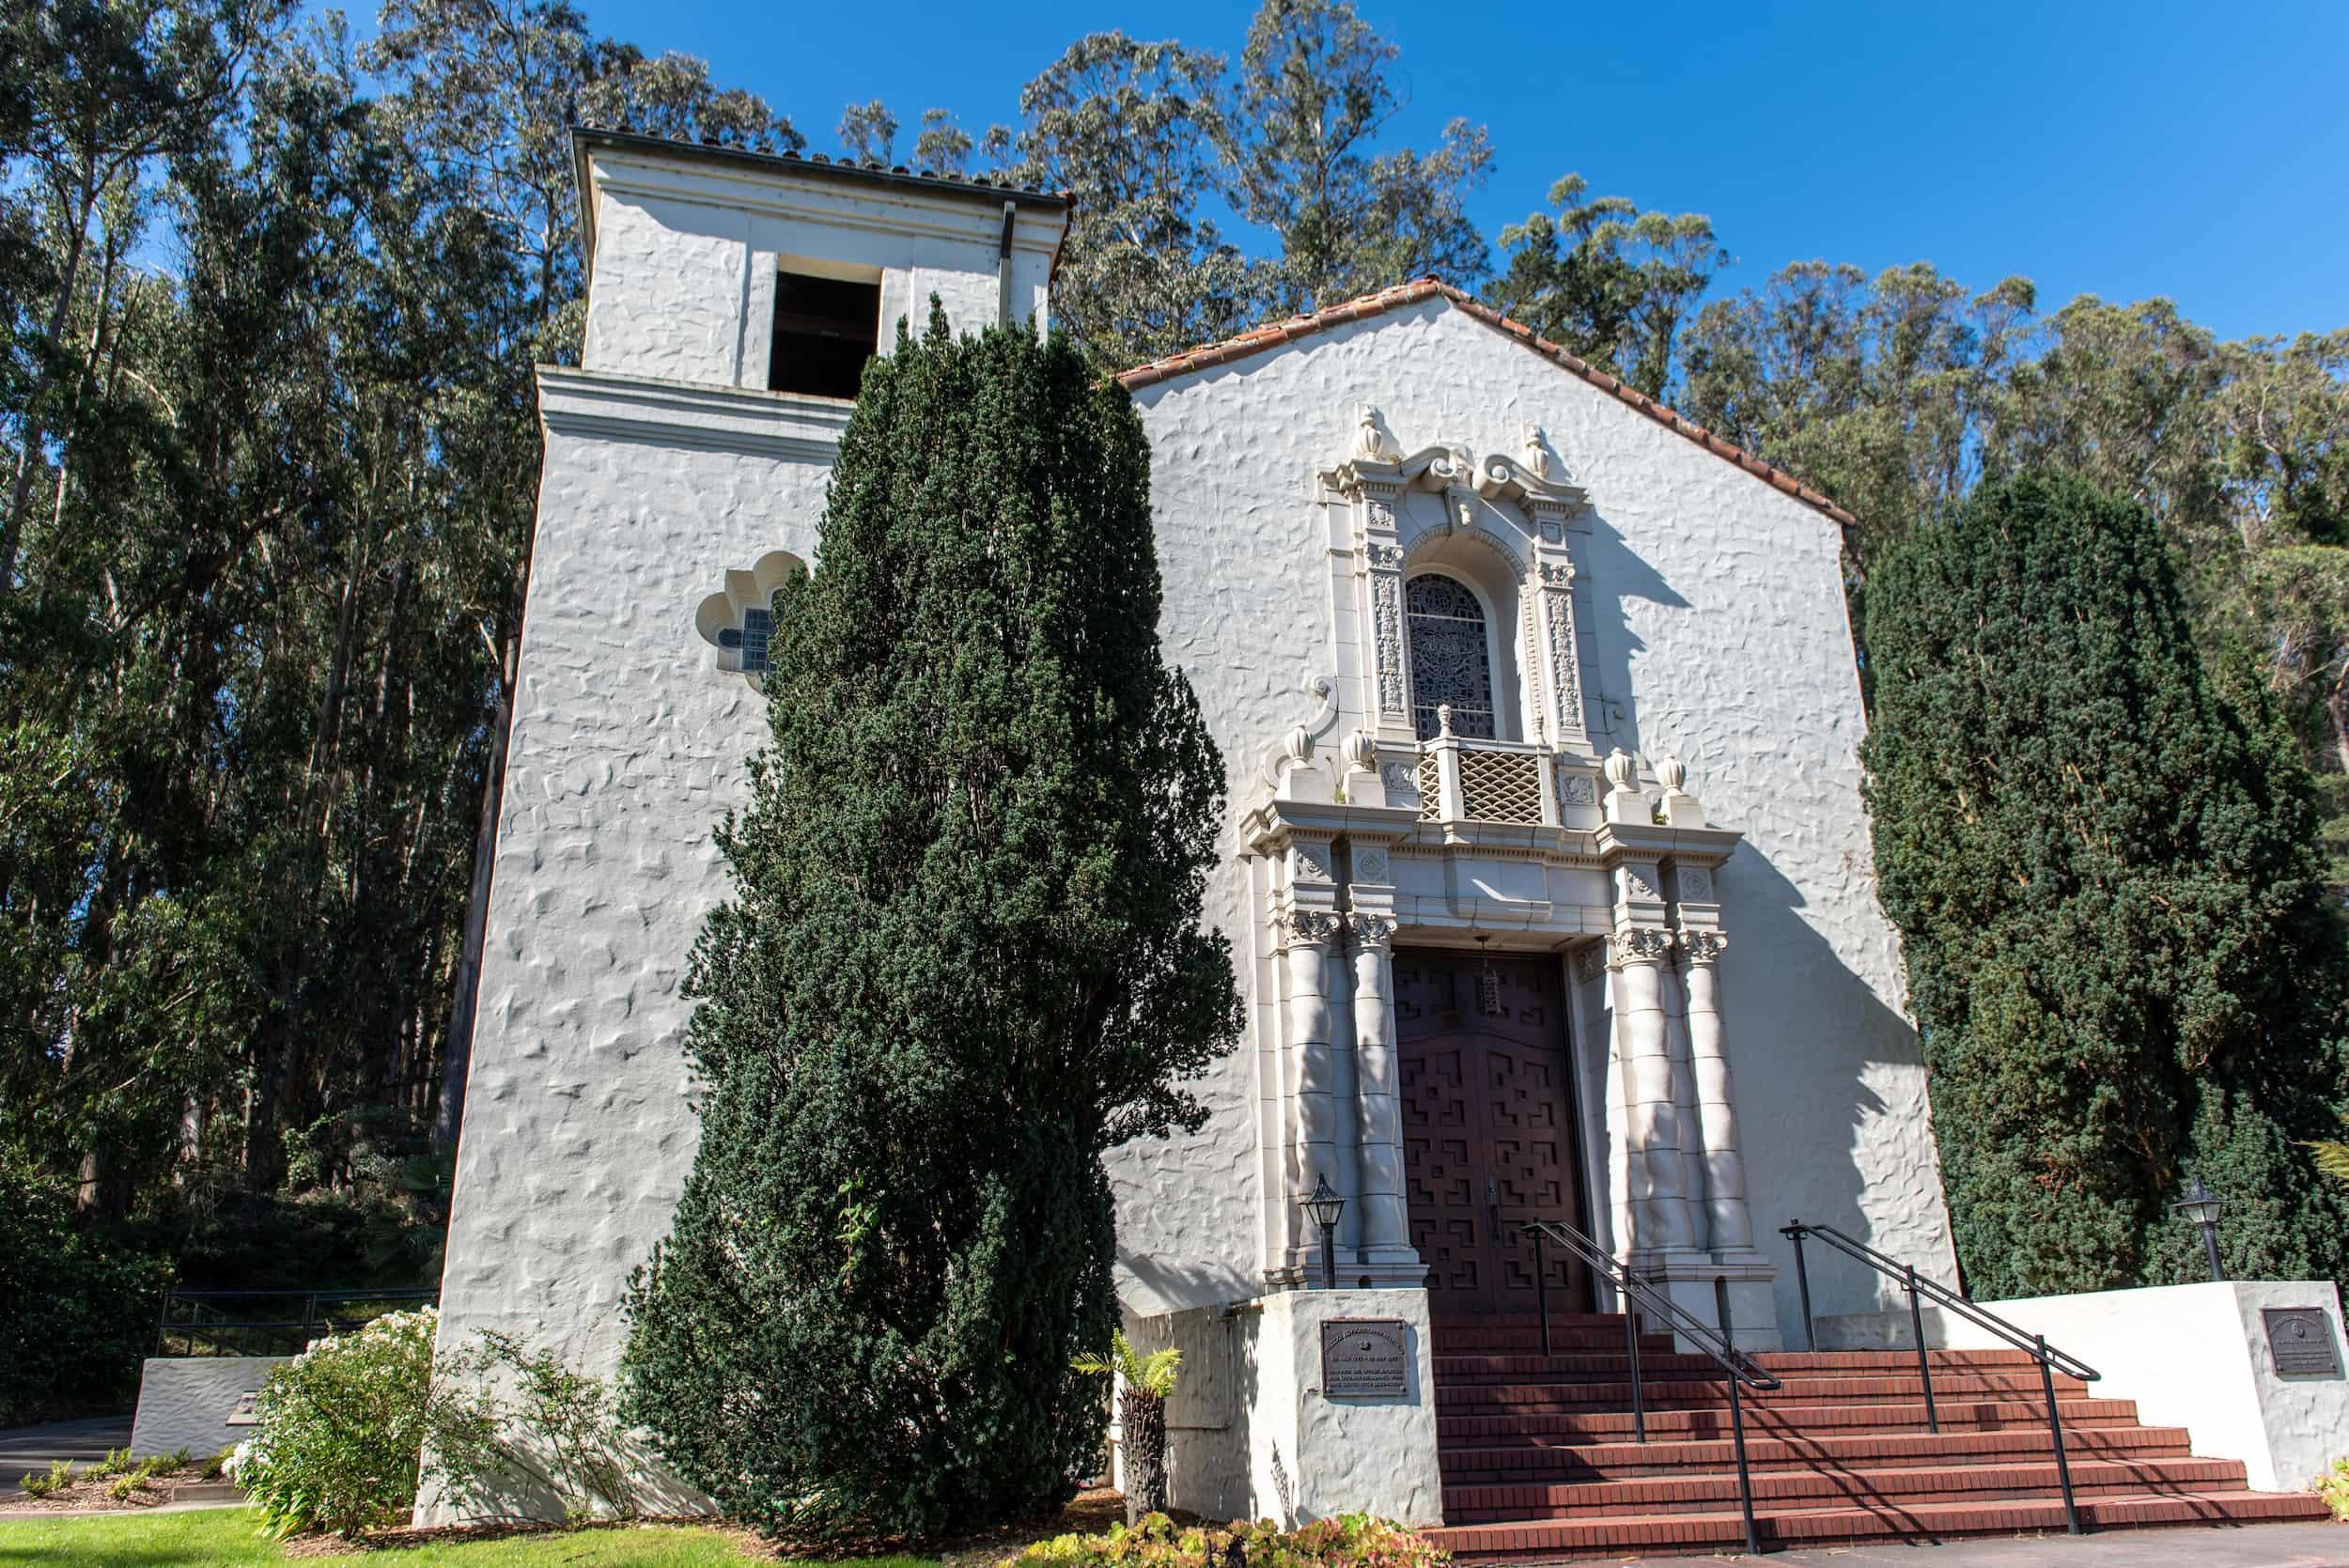 Exterior of the Interfaith Center at the Presidio.